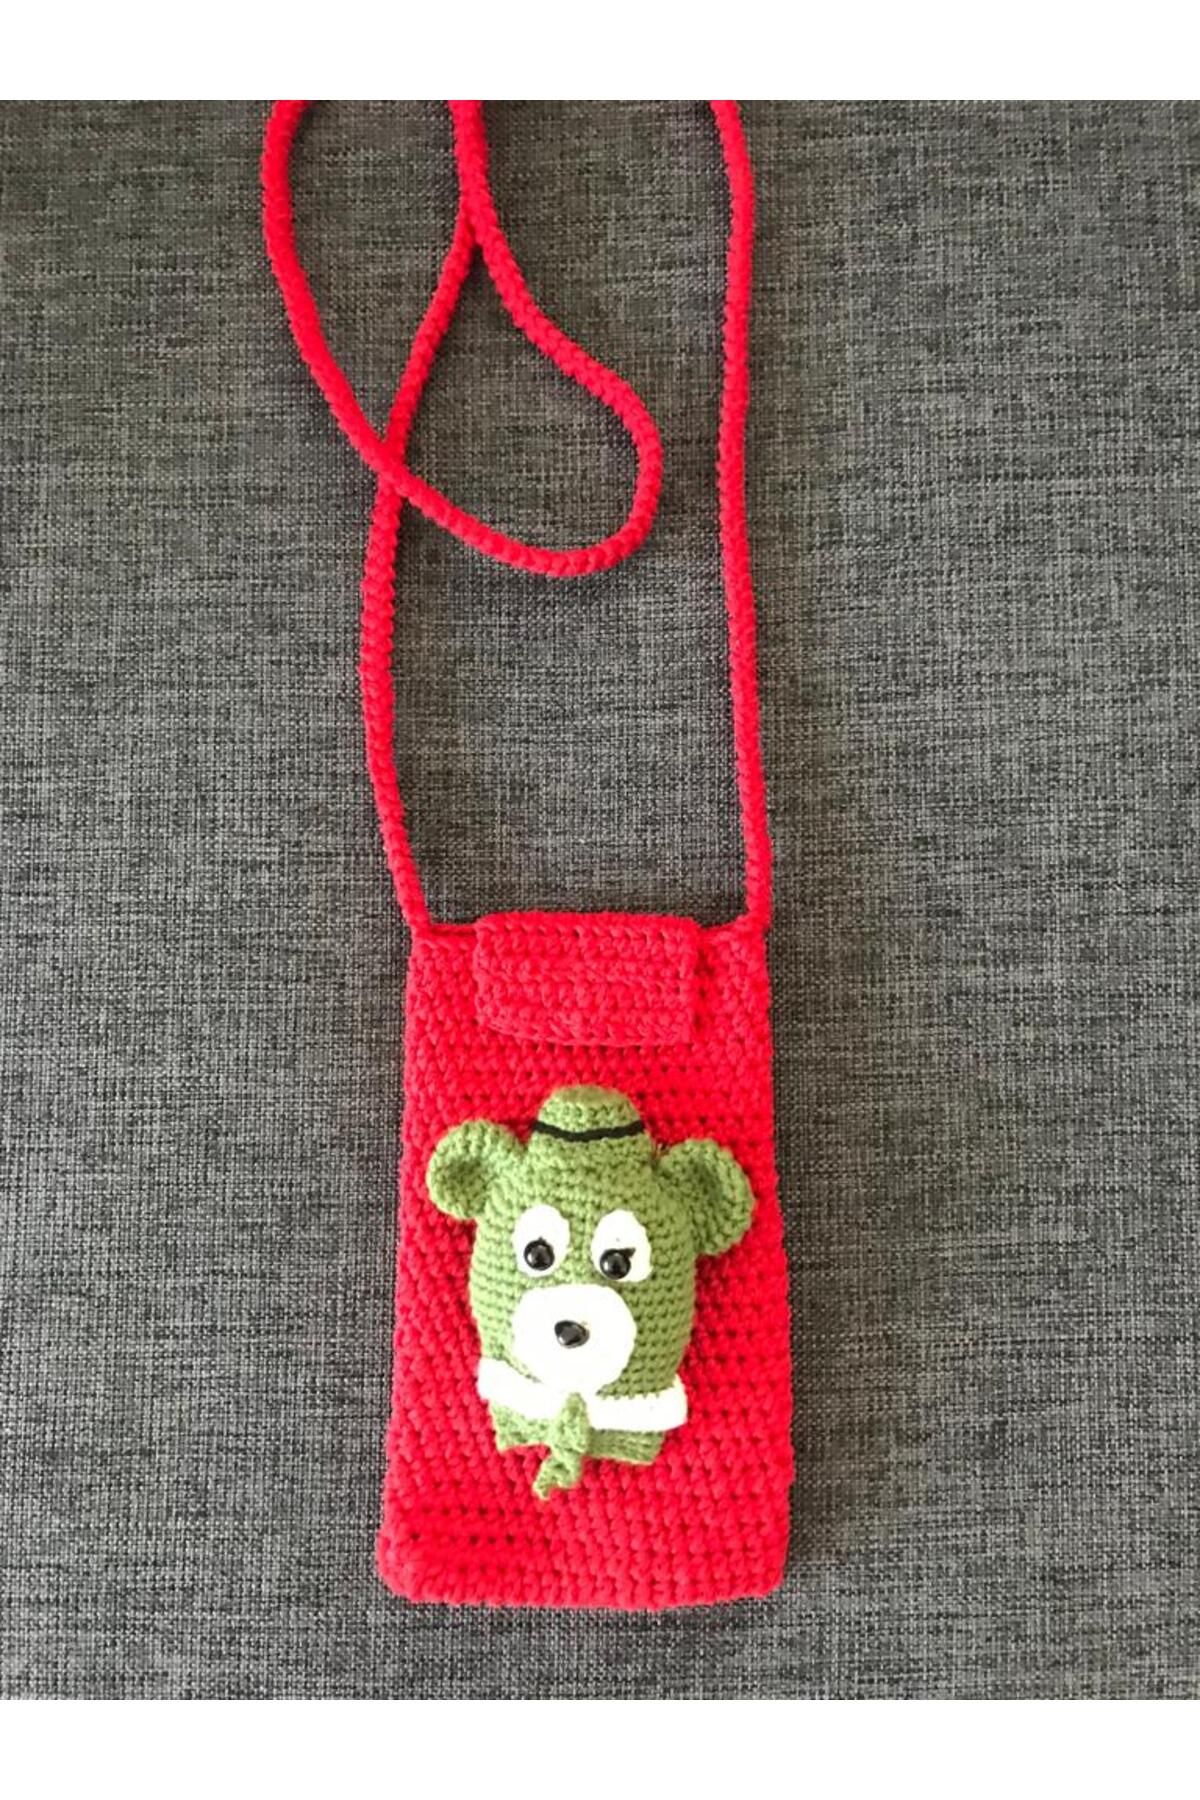 ŞEHR-İ PAZAR Kırmızı renk ayı yogi figürlü telefon çantası